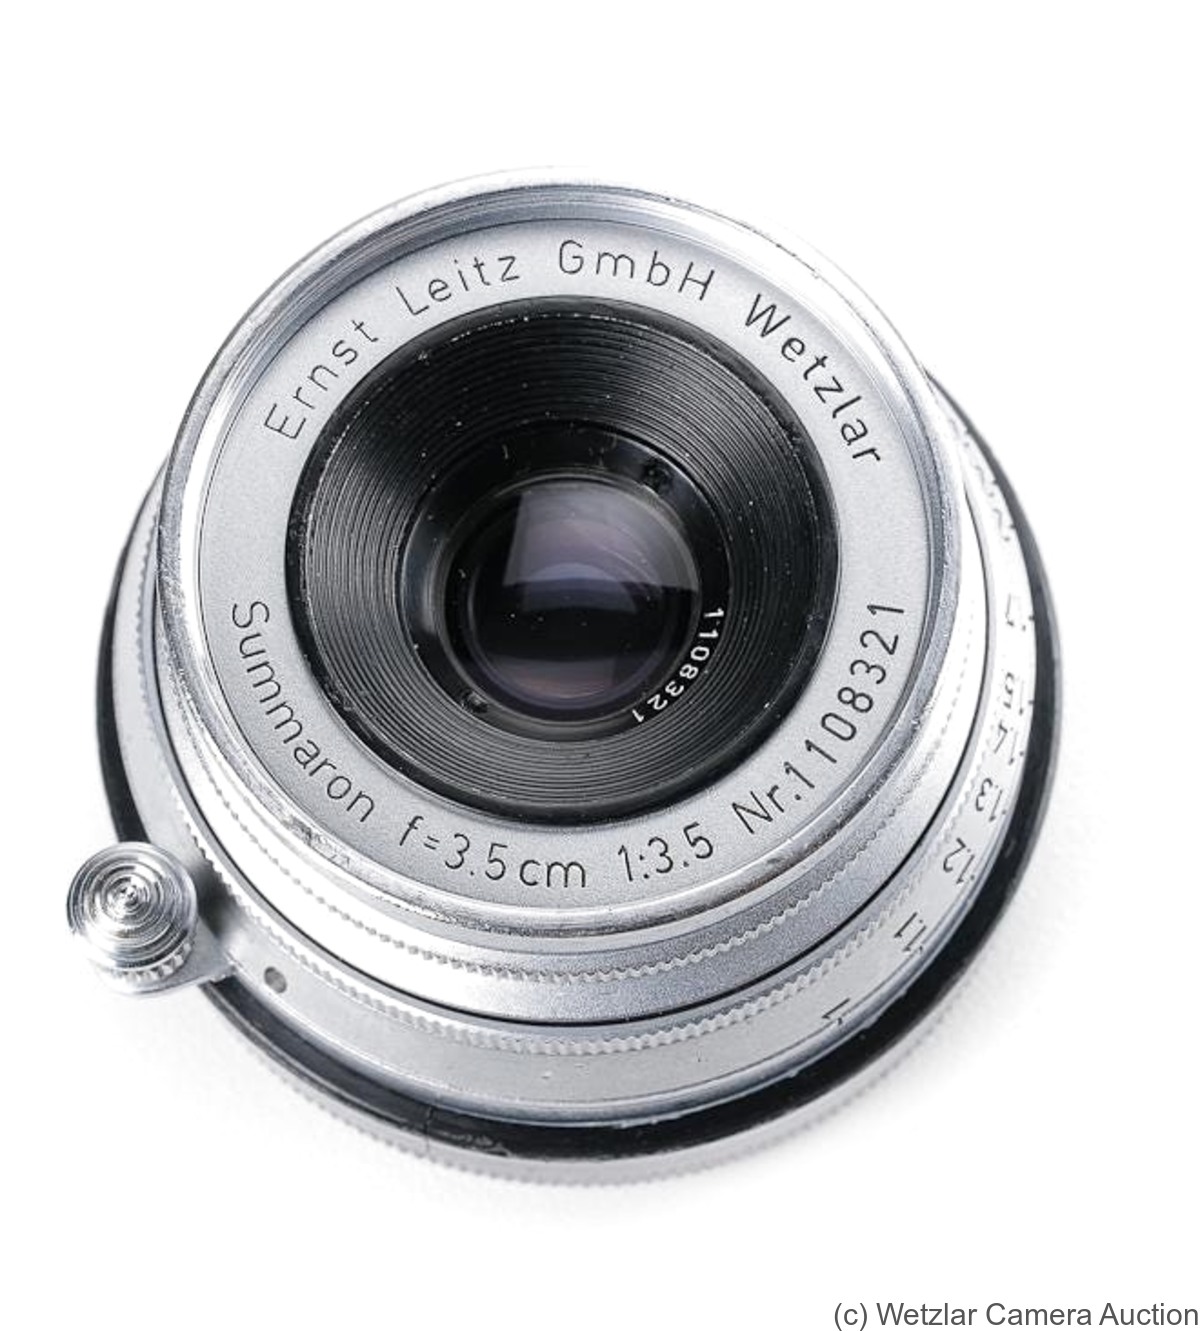 Leitz: 35mm (3.5cm) f3.5 Summaron (BM, early, Dual Serial) camera